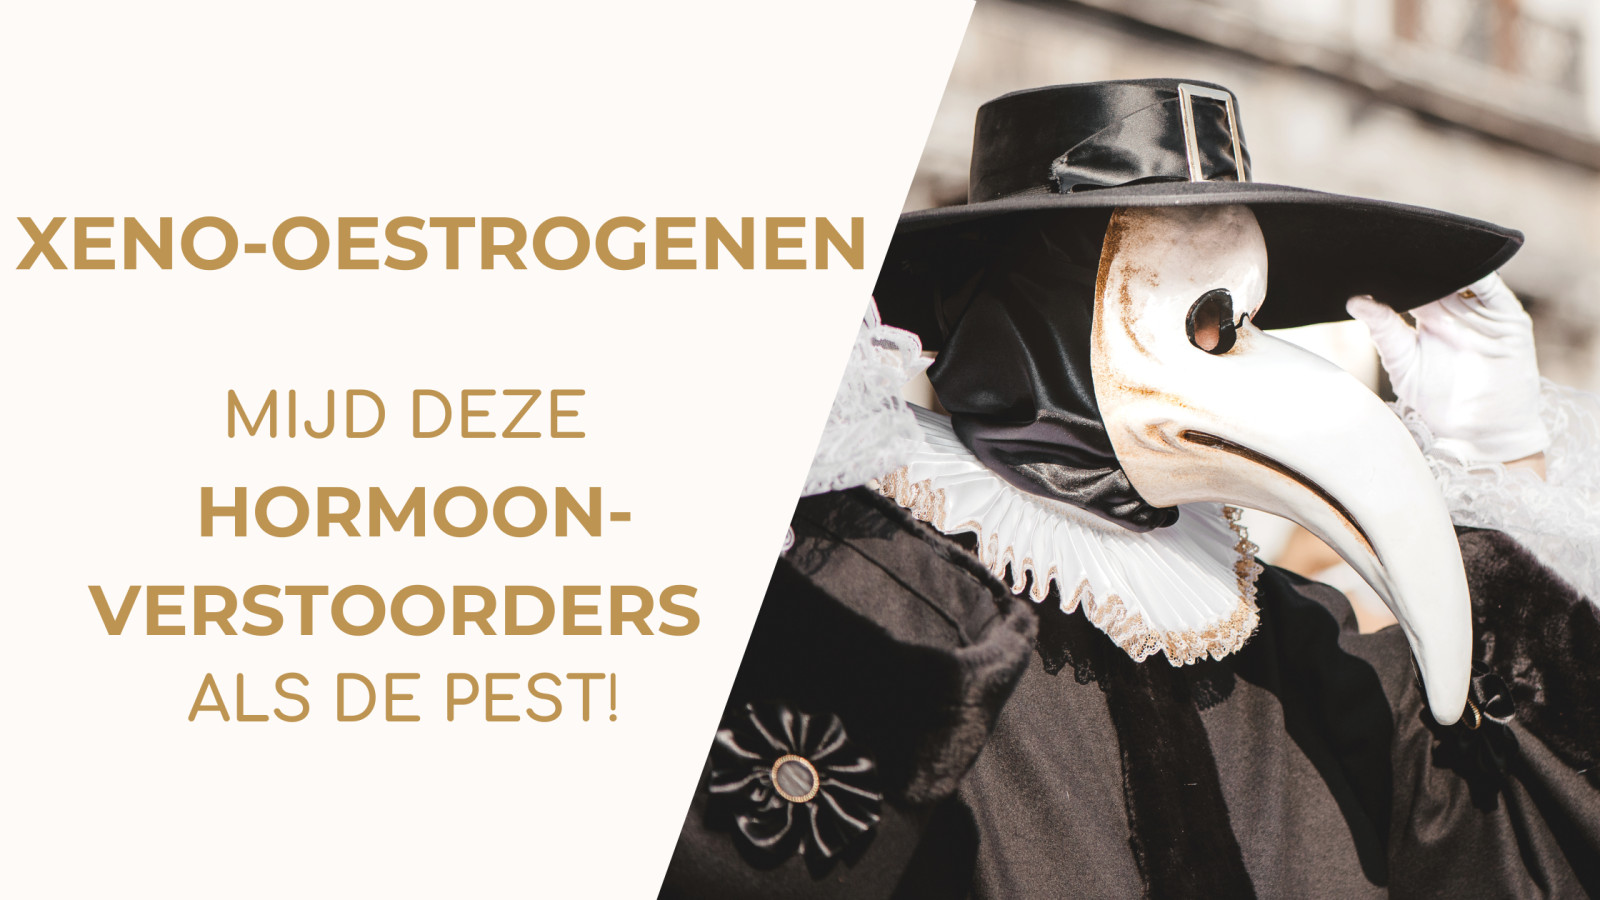 Xeno-oestrogenen – mijd deze hormoonverstoorders als de pest!